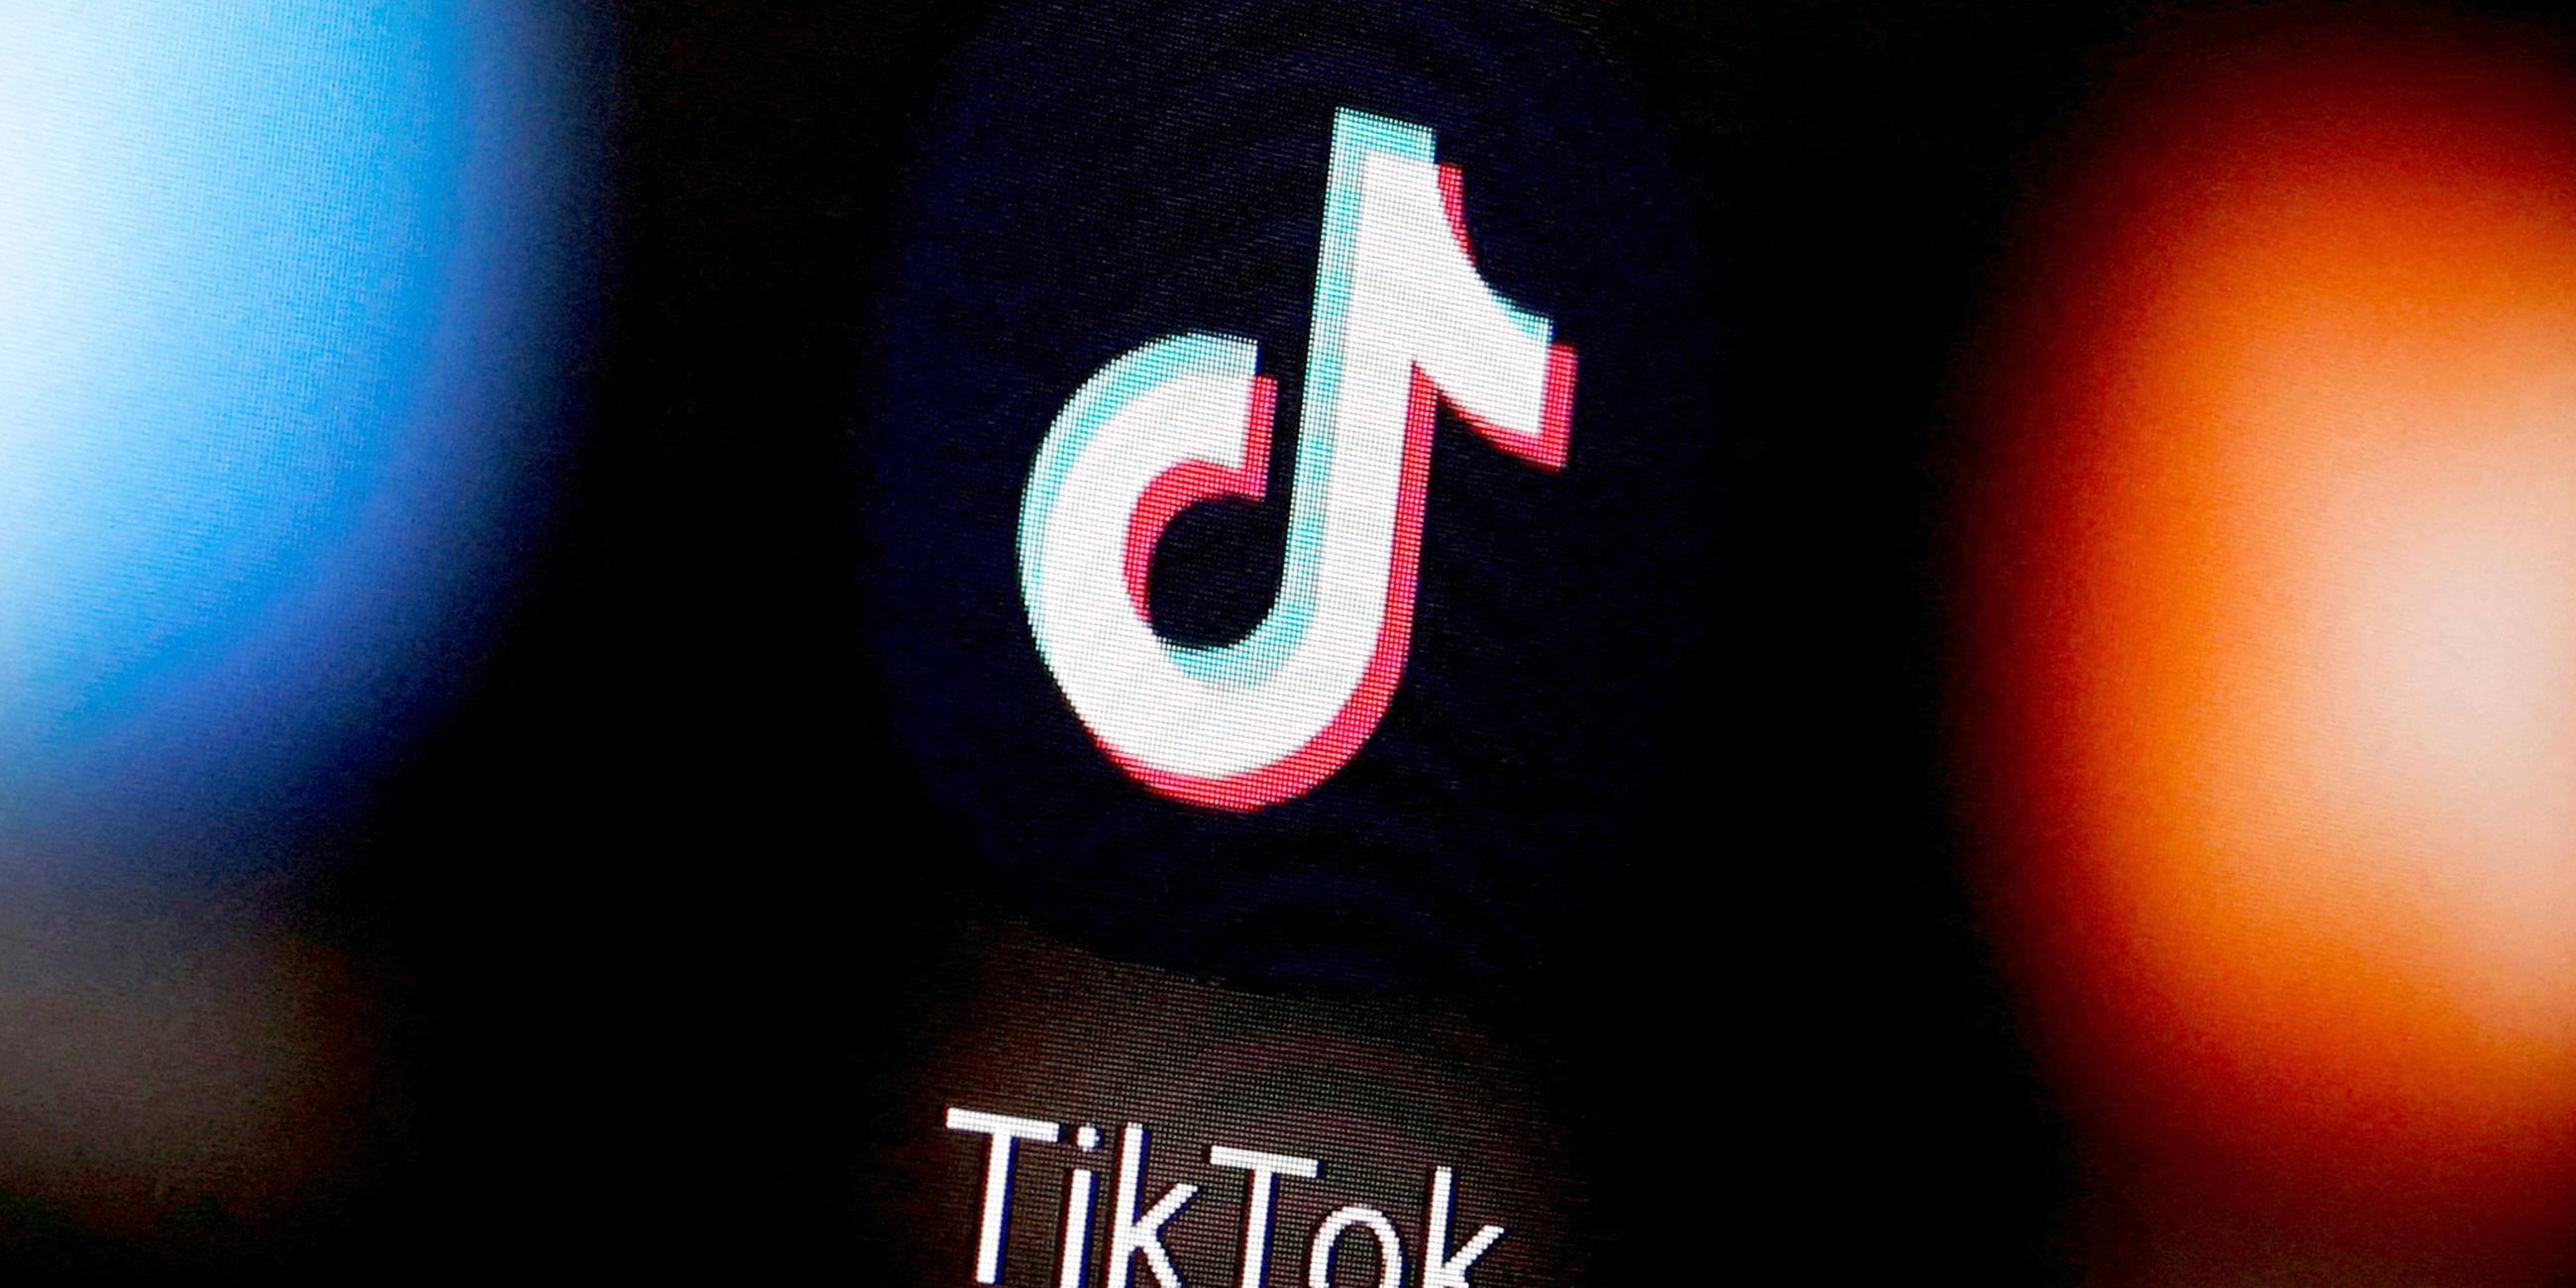 Symbolbild: TikTok Logo ist auf einem Smartphone zu sehen